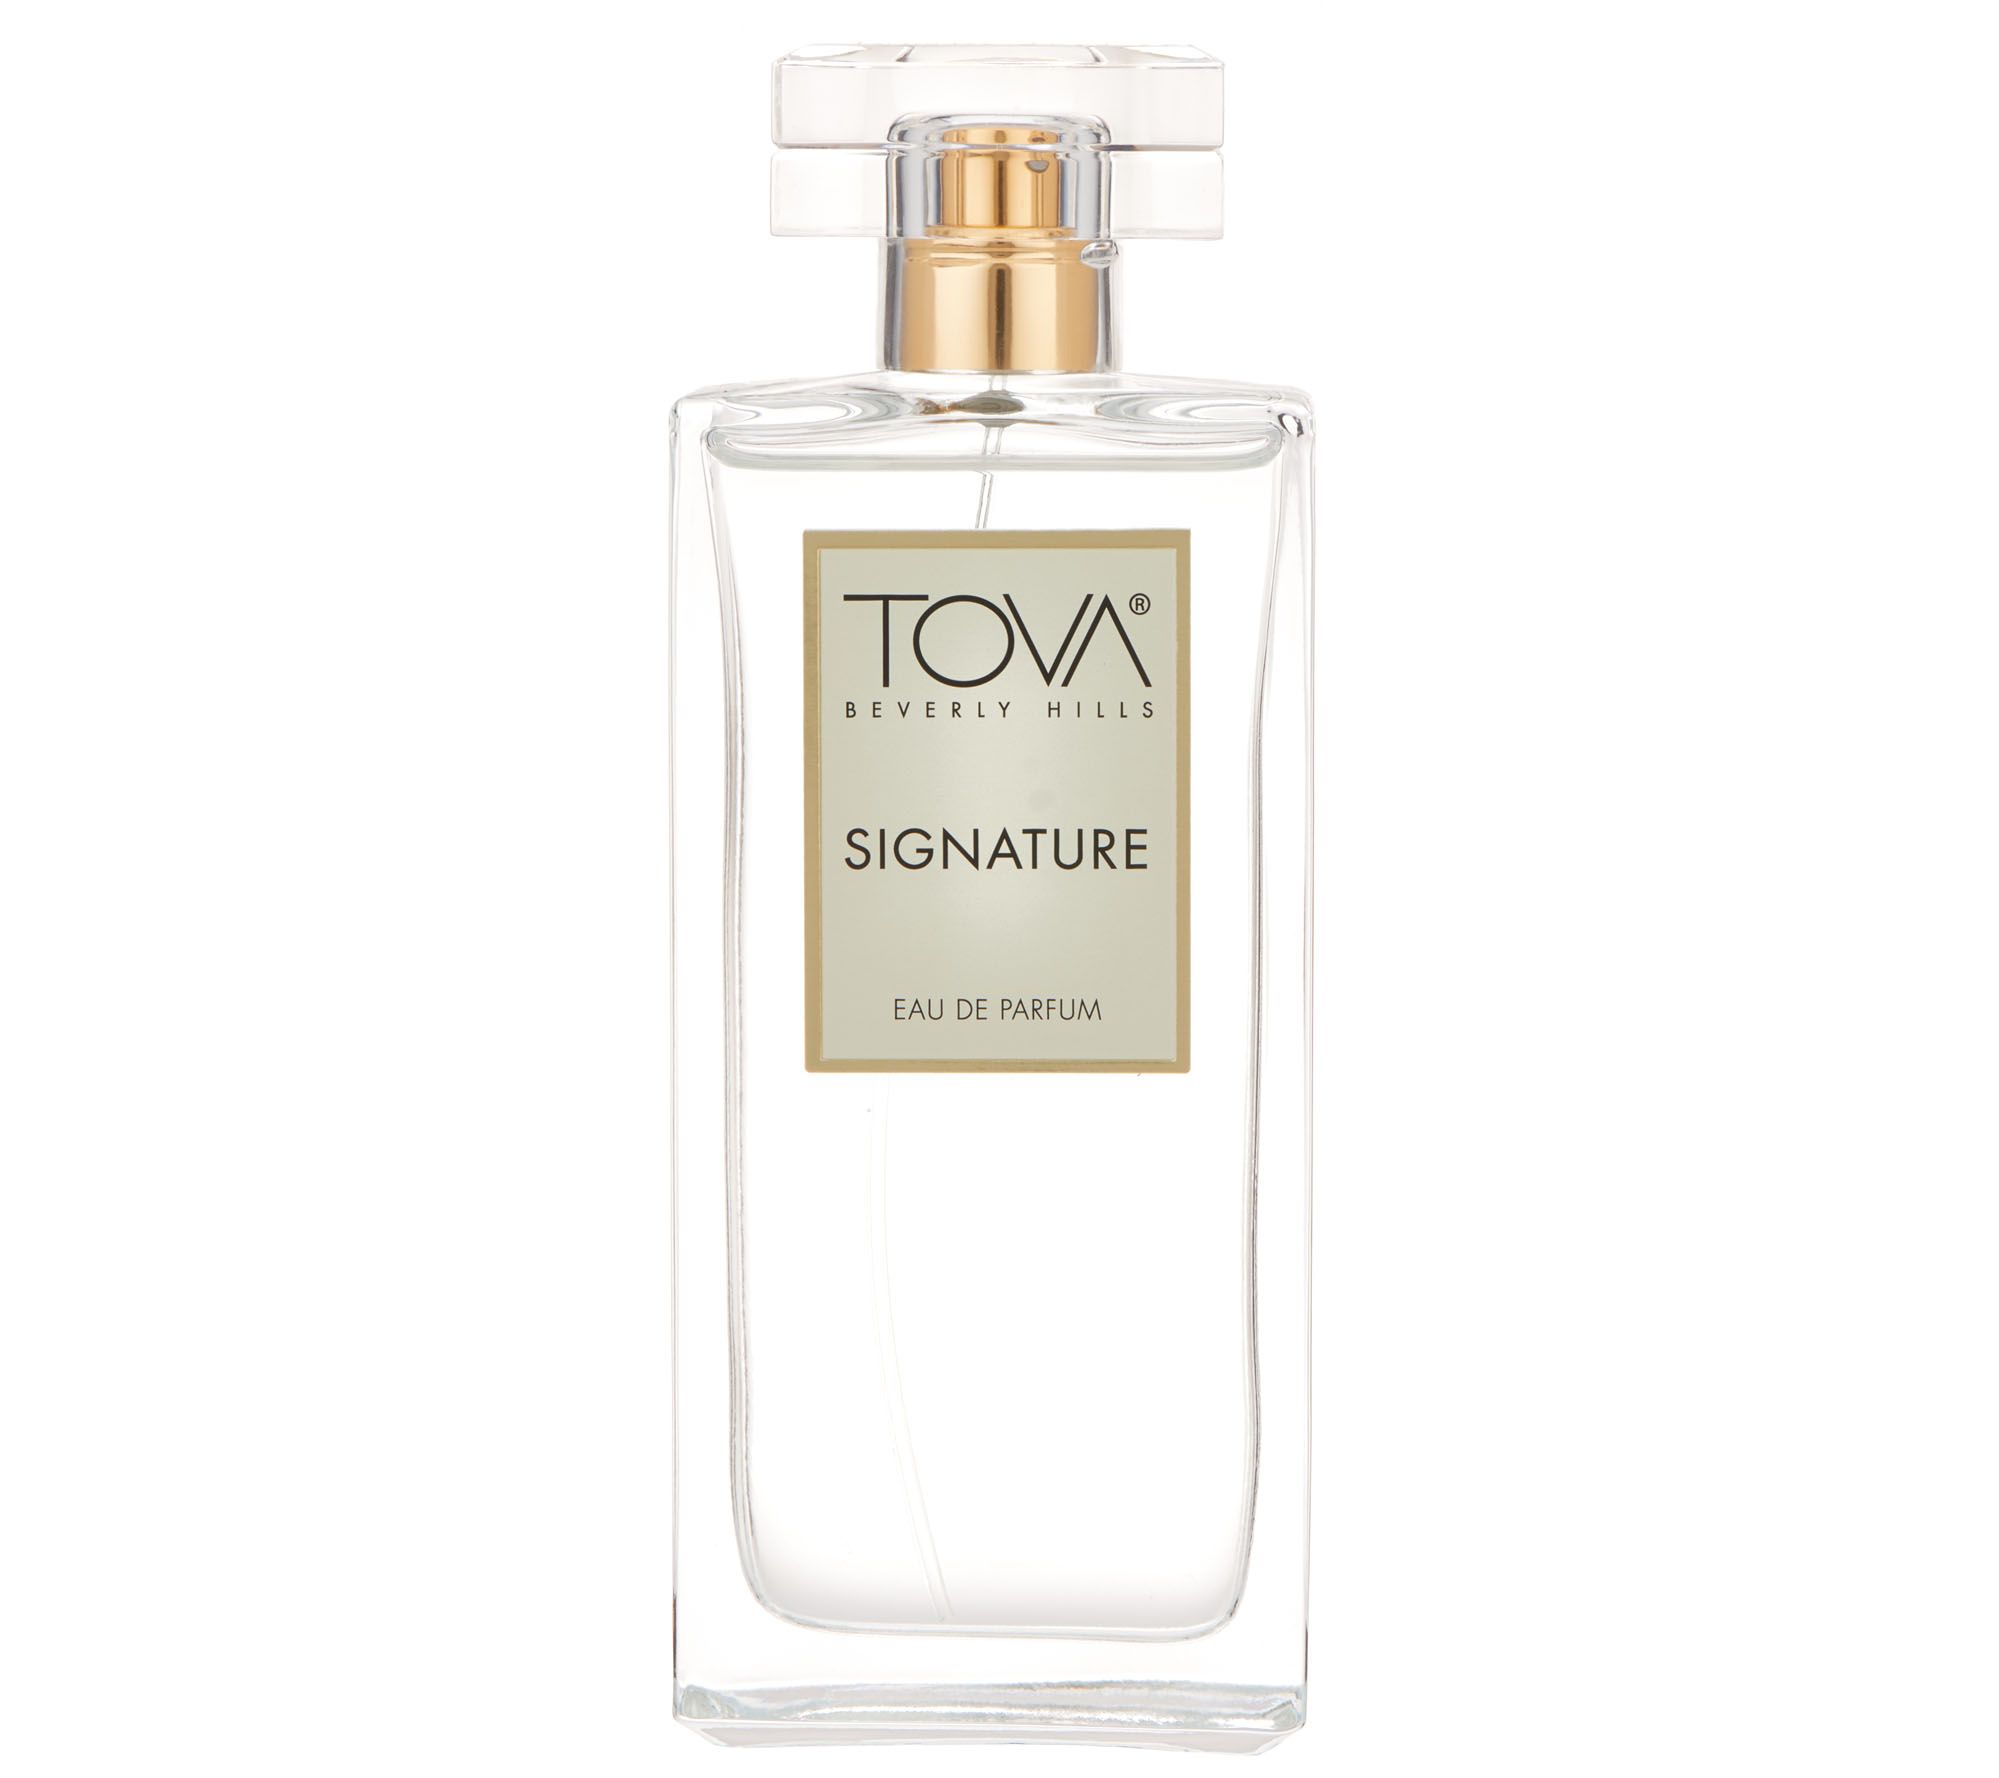 perfume similar to tova signature